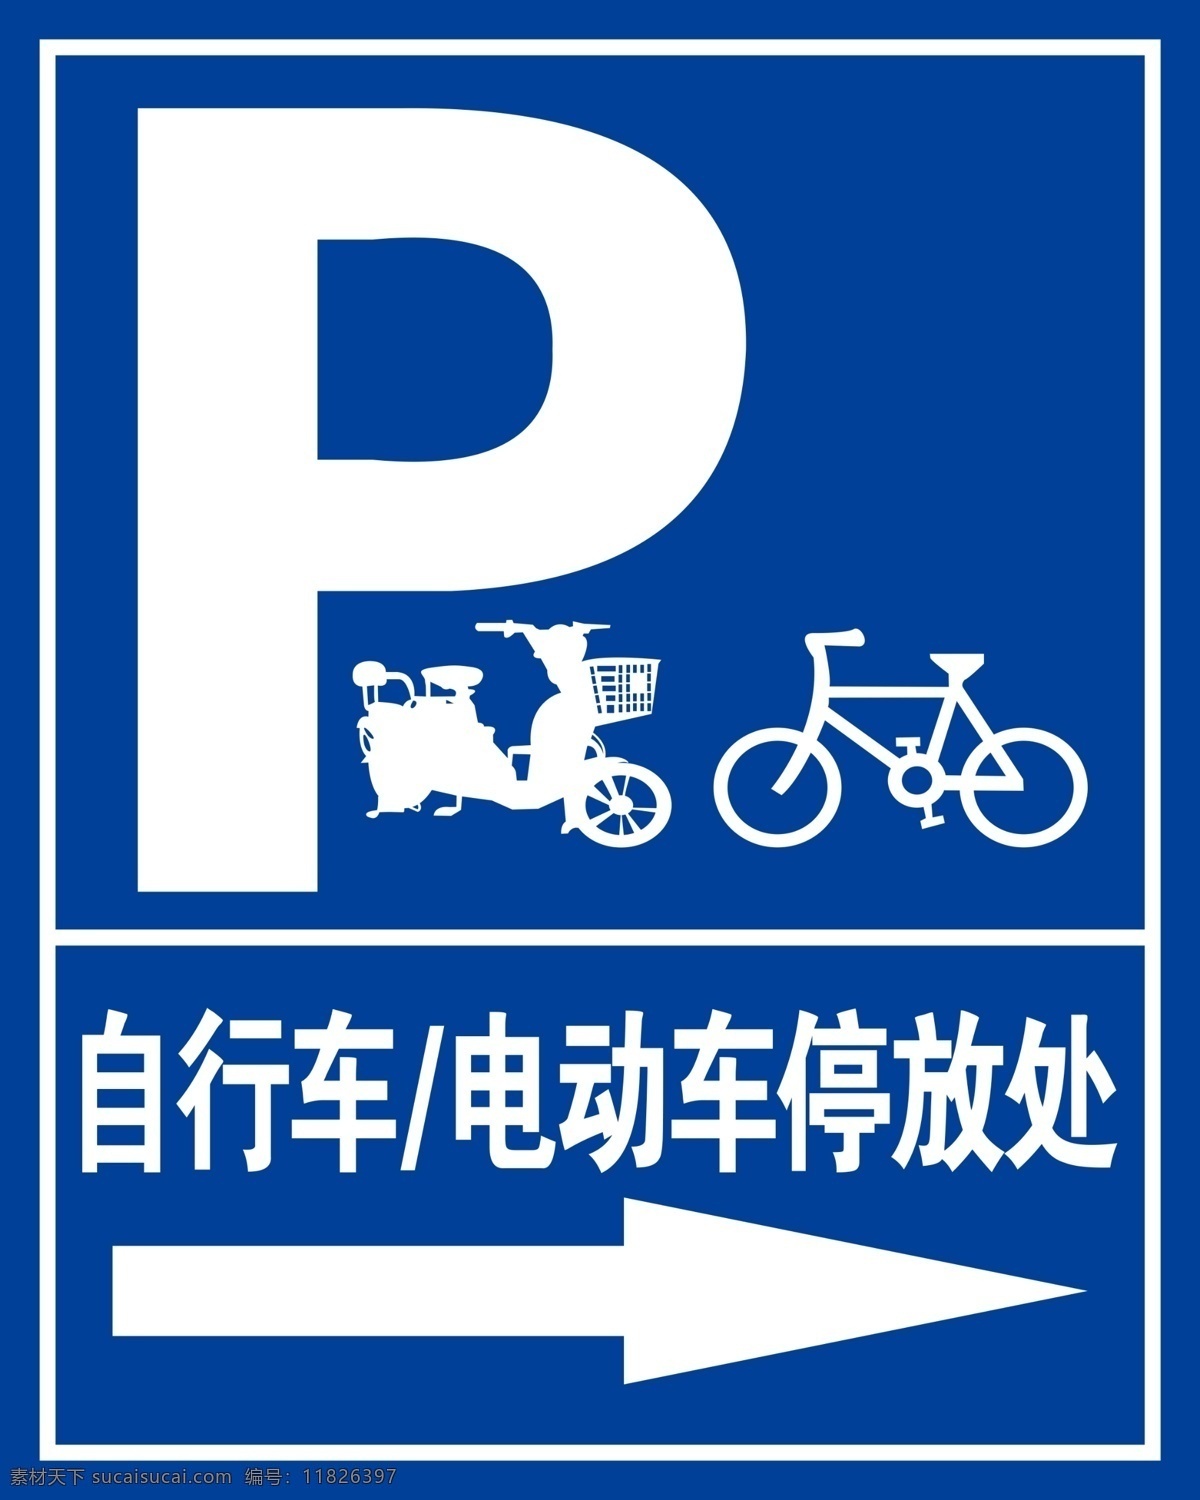 自行车 电动车 停放 处 自行车停放处 电动车停放处 停车 标识 单车 停车标识 自行车图标 标志图标 分层